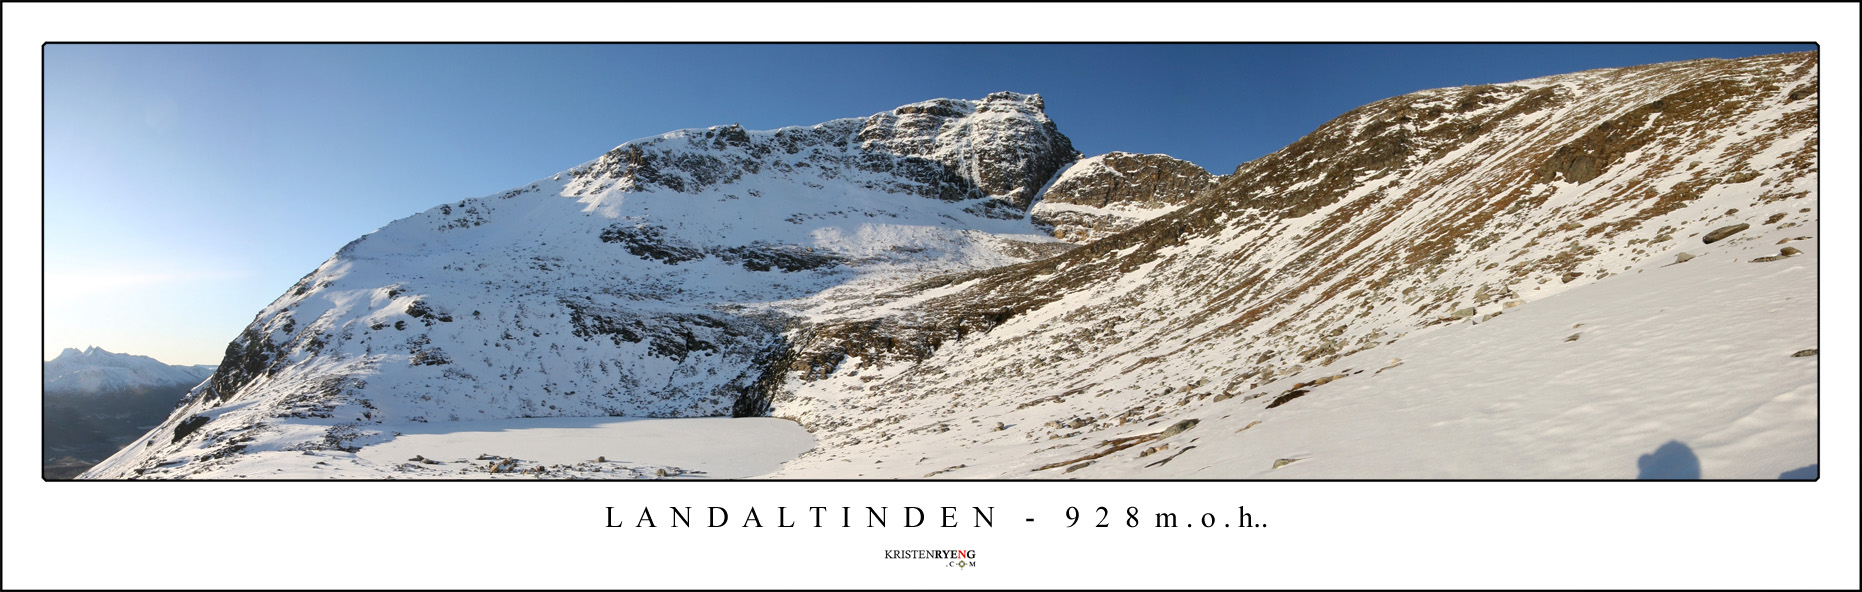 Panorama-Langdaltinden4.jpg - Utsikt på vei ned fra Langdaltinden (924 moh). Her med utsikt mot Finnheimfjellet (1083 moh). Legg merke til skrivefeilen på bildet.... *Arg*